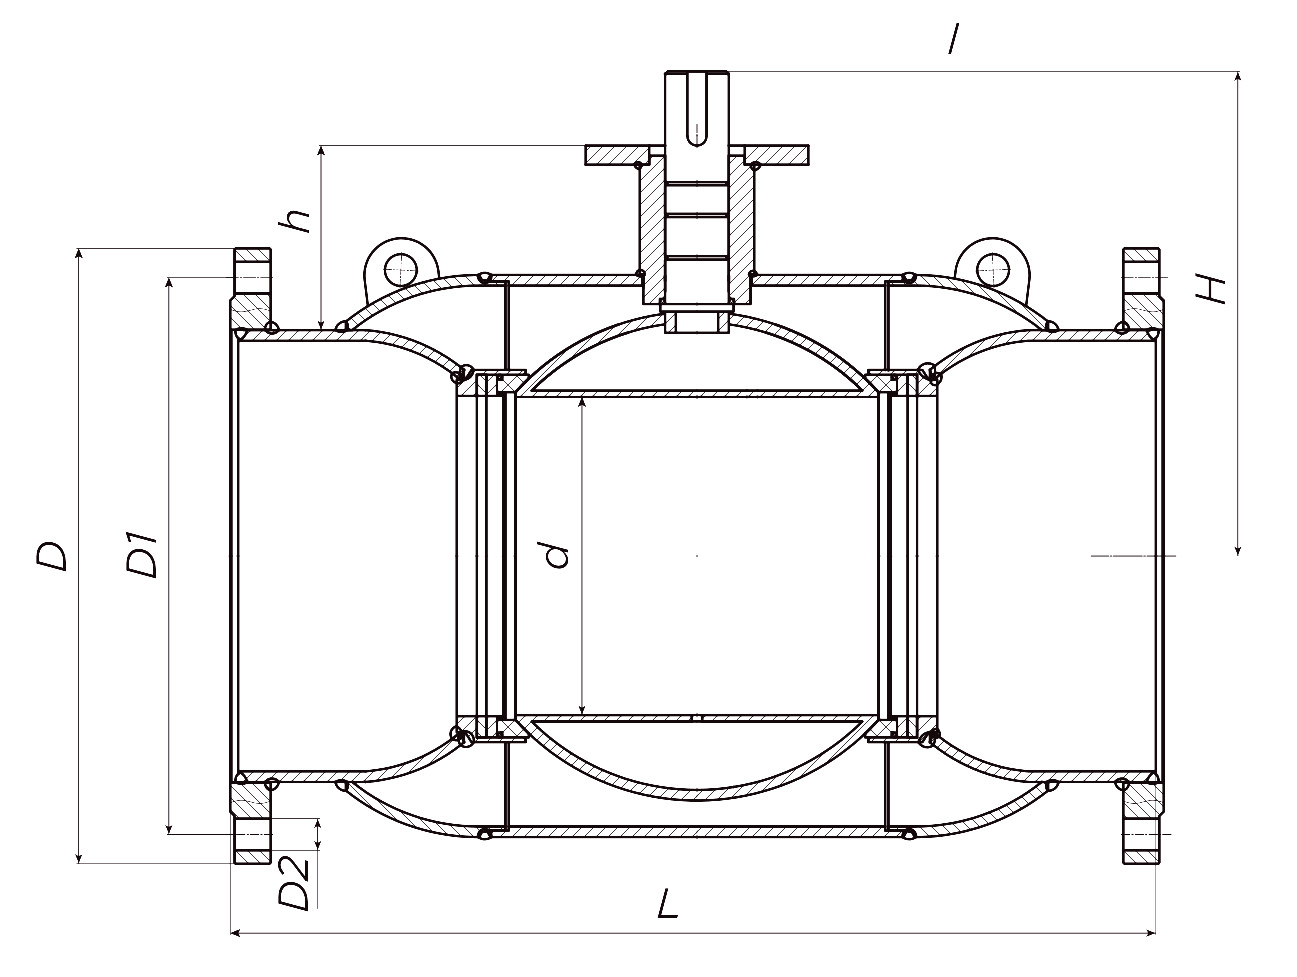 Кран шаровой ALSO КШ.Ф.Р.300.25-01 Ду300 Ру25 стандартнопроходной, присоединение - фланцевое, корпус - сталь 20, уплотнение - PTFE, под редуктор/привод